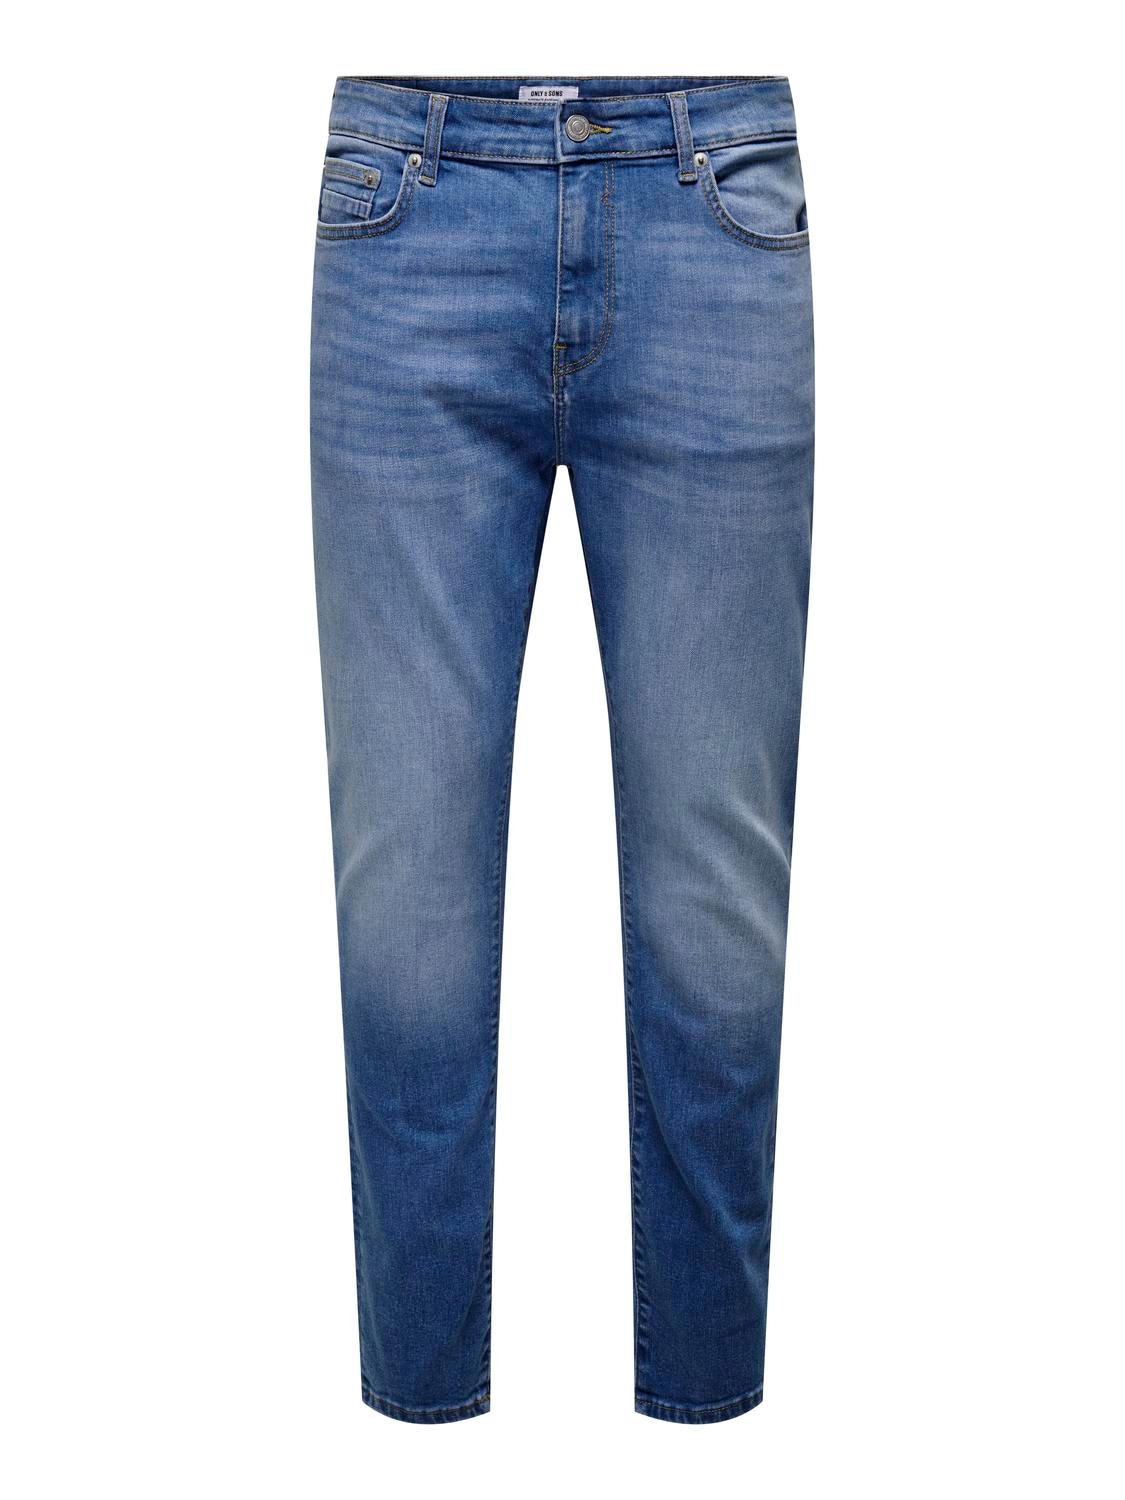 ONLY & SONS onsrope slimtape 7844 dnm jeans box ext -Light Medium Blue Denim - 22027844